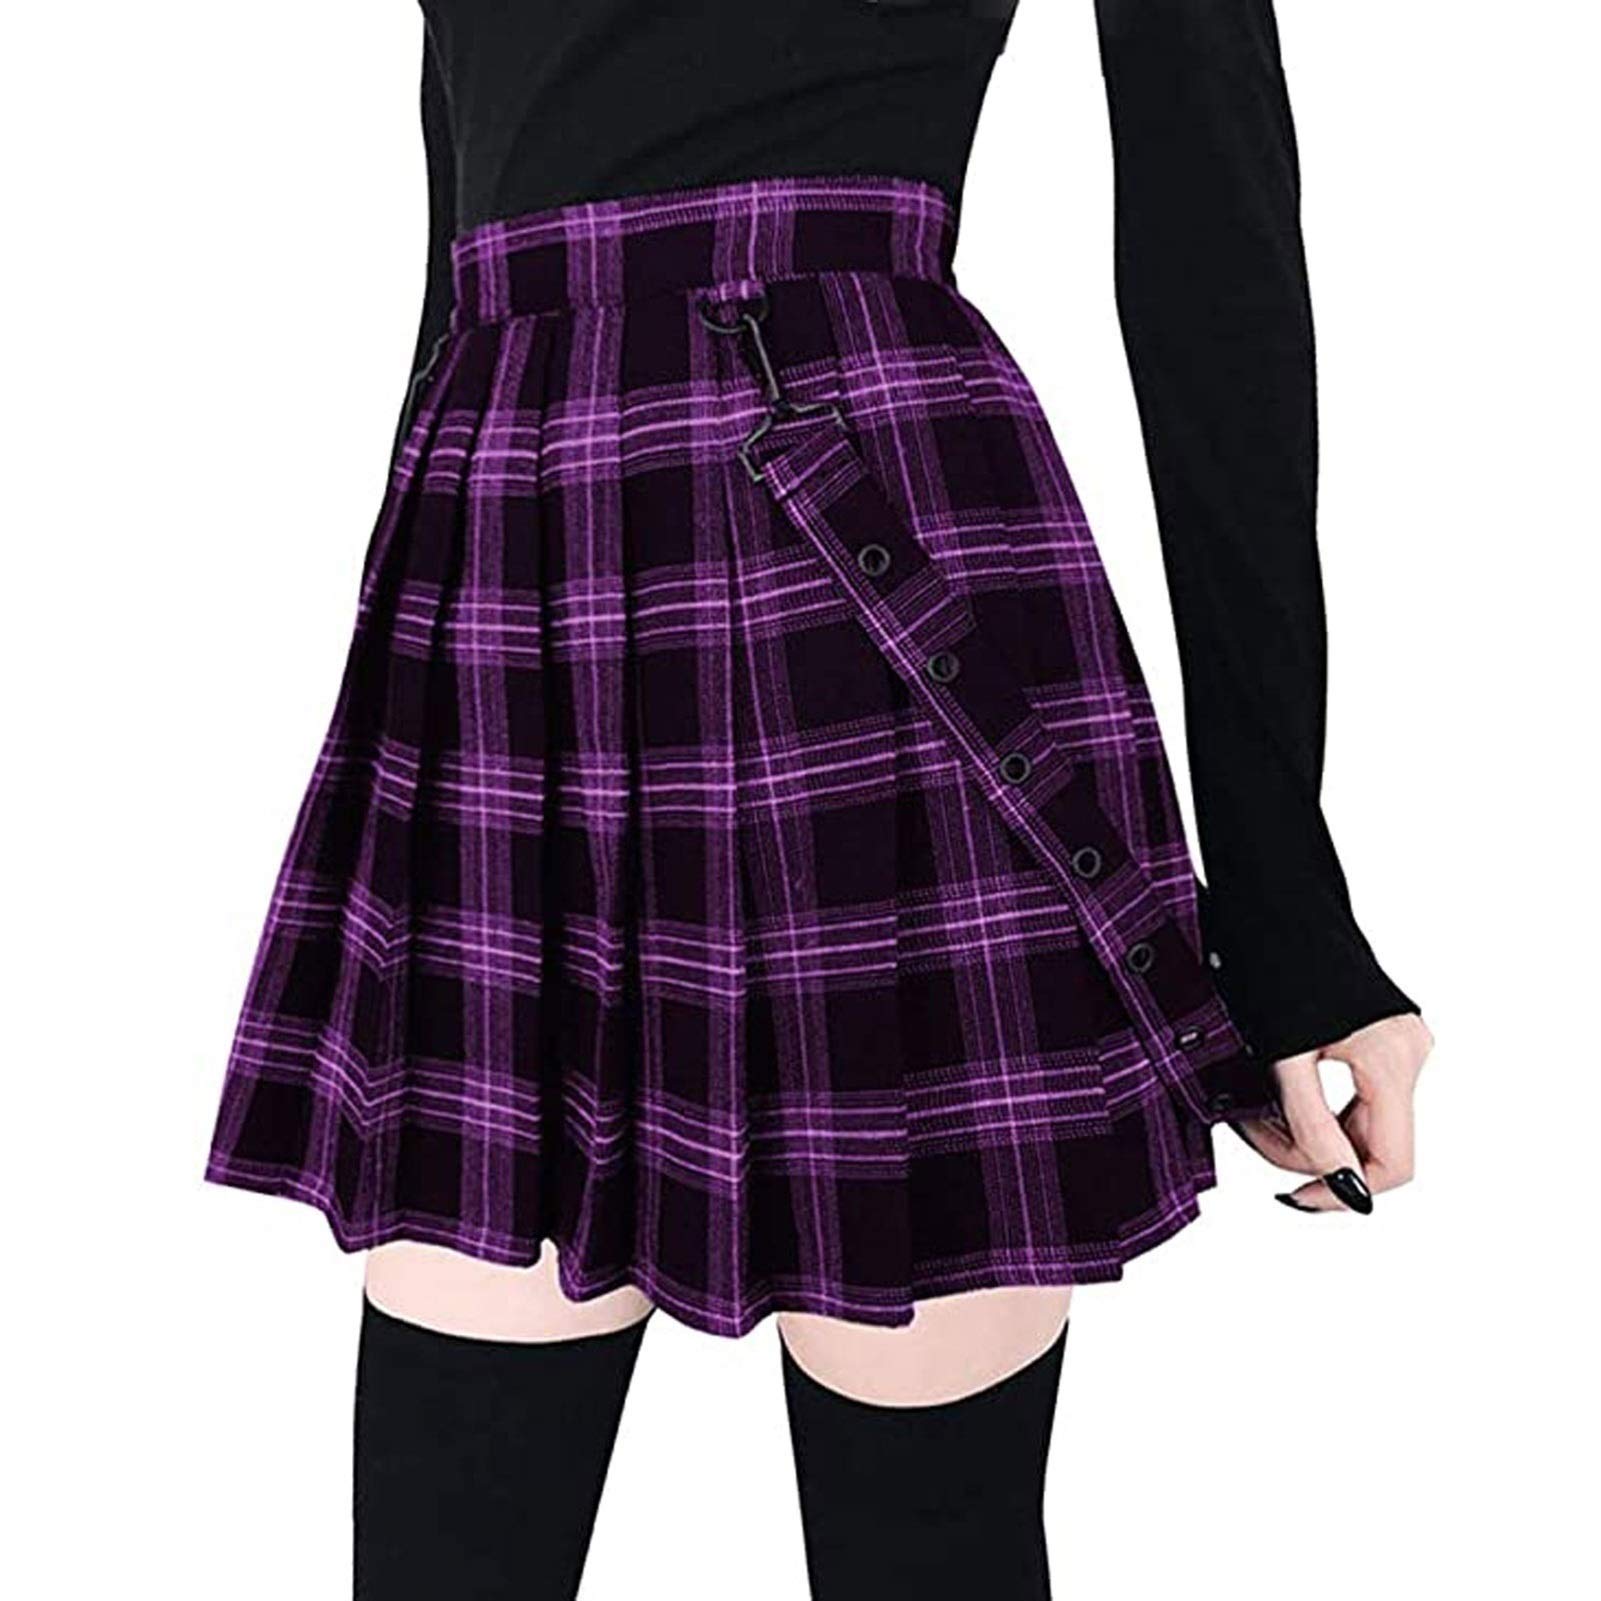 Damen Kilt Rock Kariert Schottischer Kilt Tartan Rot Blau Faltenrock mit Kette Minirock Hohe Taille Kurz Skirt Skater Rock (Color : Purple-A, Size : 5XL)